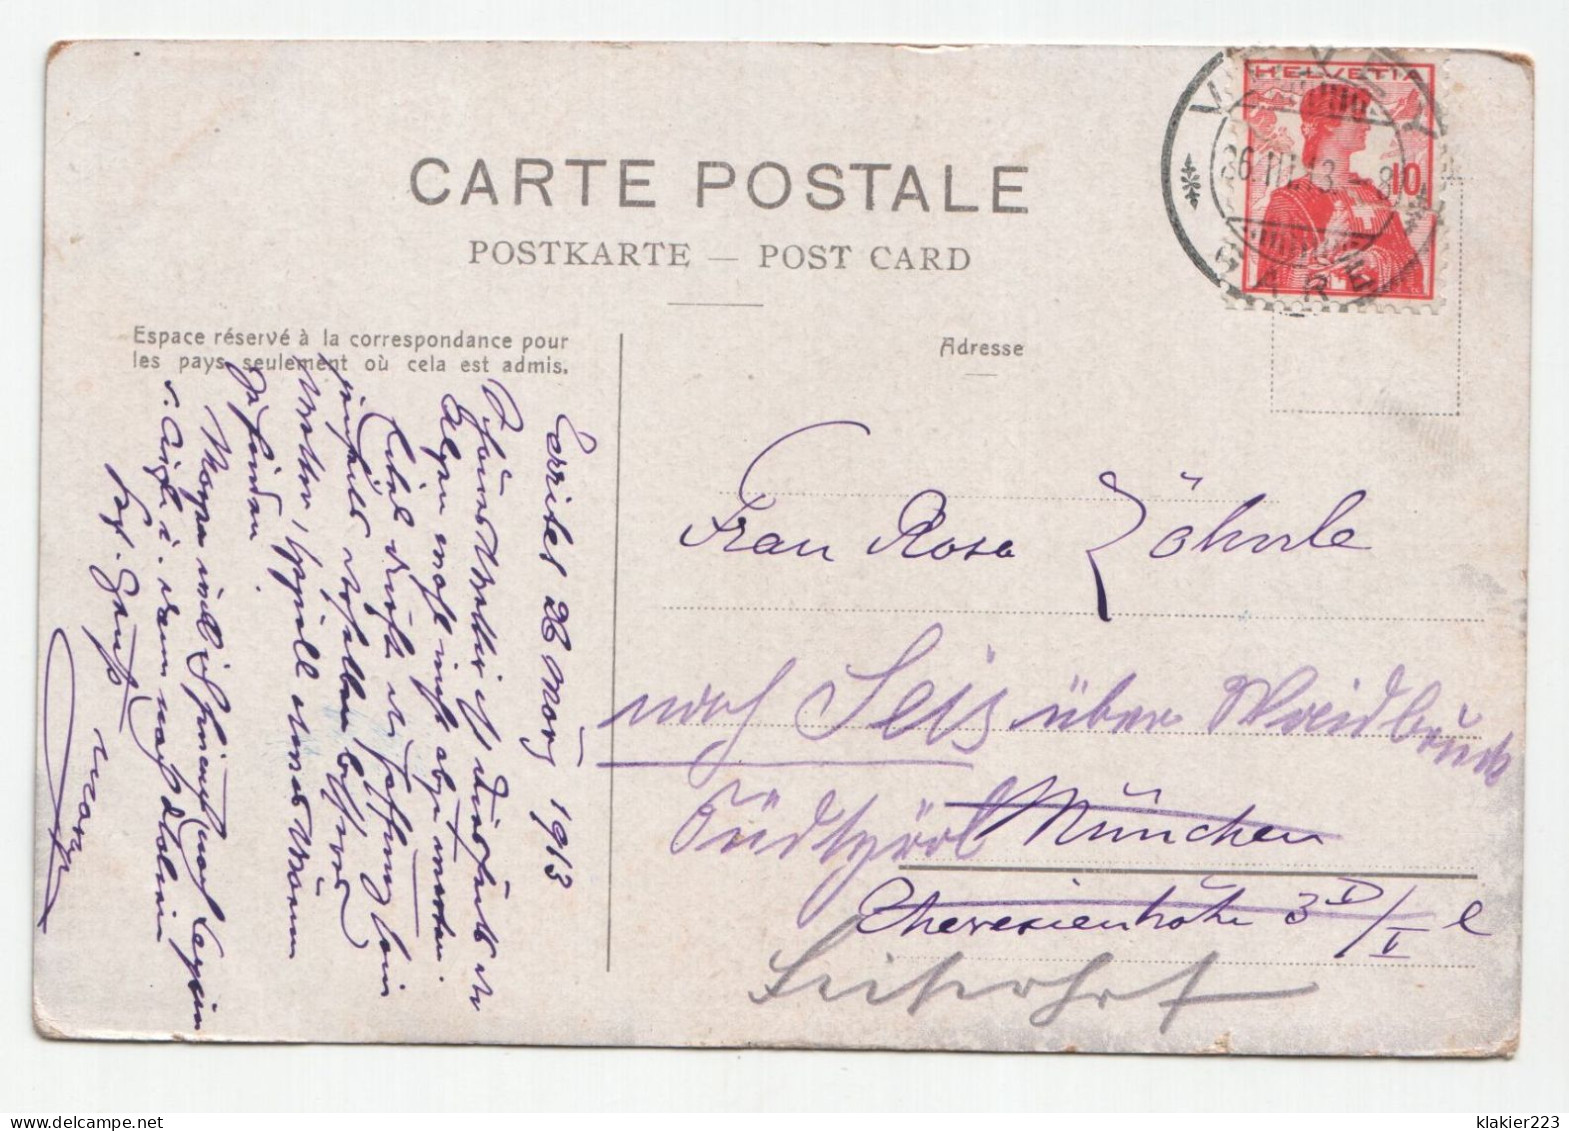 Territet-Chillon (Lac Leman) Et Dents Du Midi. // Jahr 1913. - Villeneuve